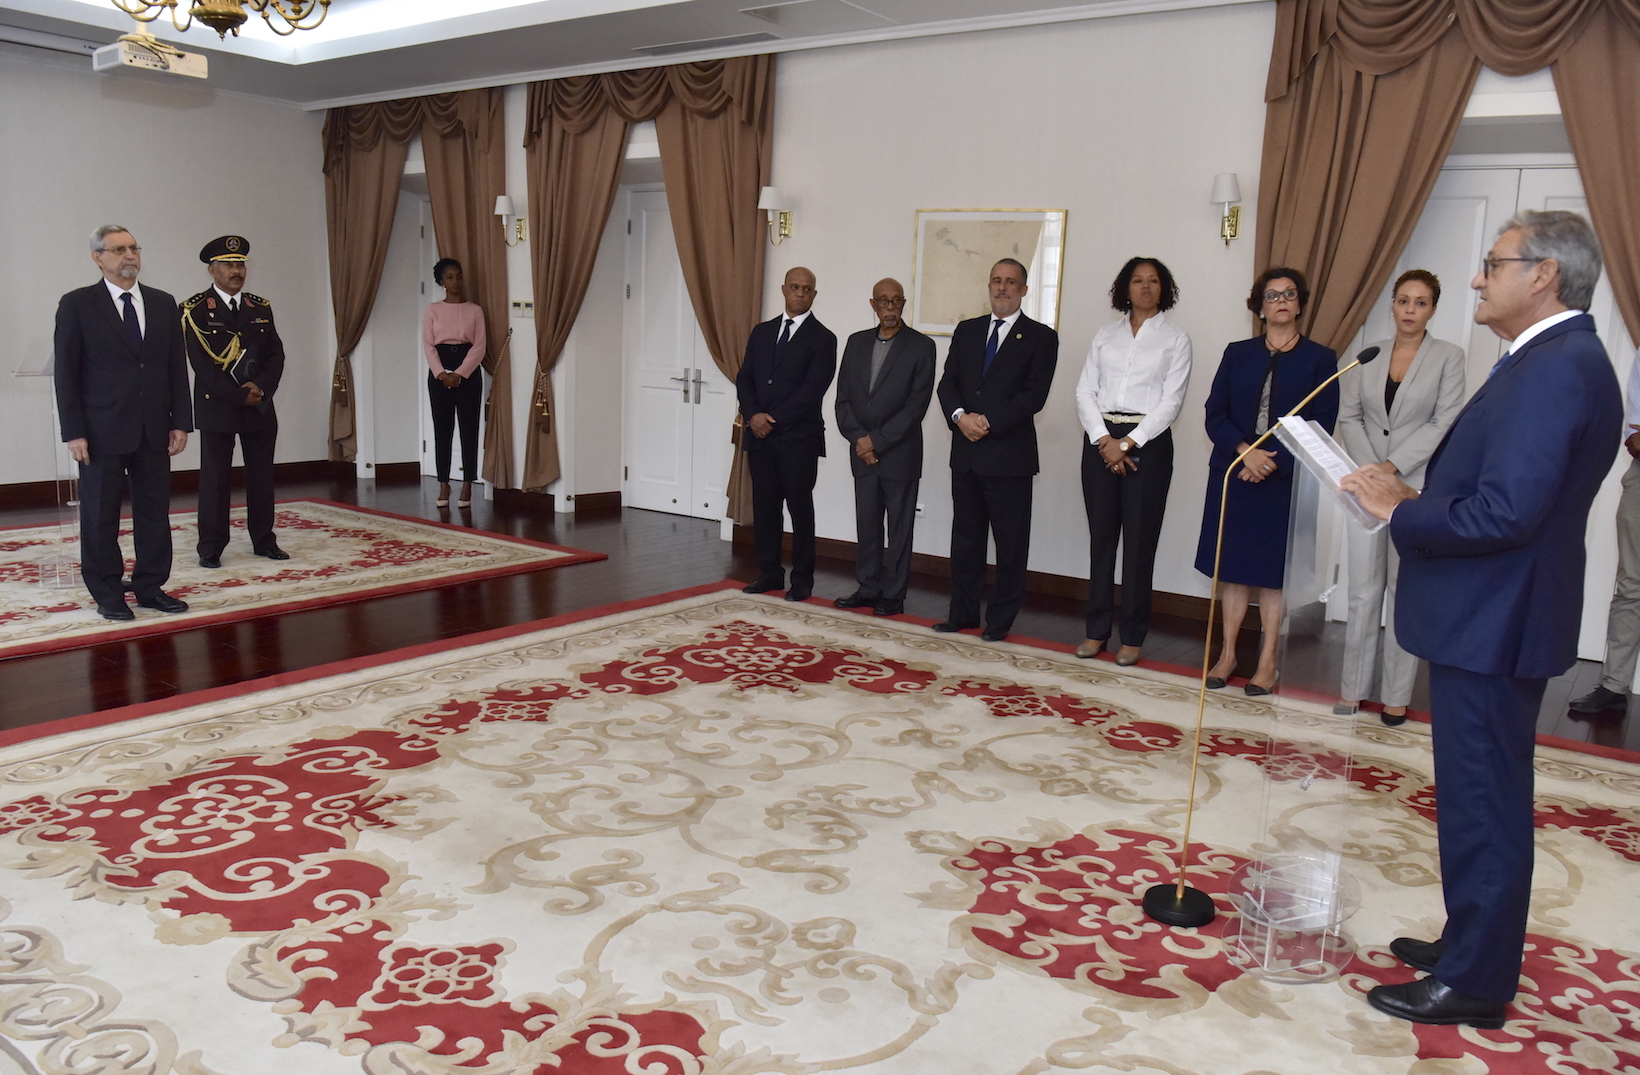 Der Präsident der Republik Kap Verde nahm das Beglaubigungsschreiben von neuem Botschafter des Souveränen Malteserordens